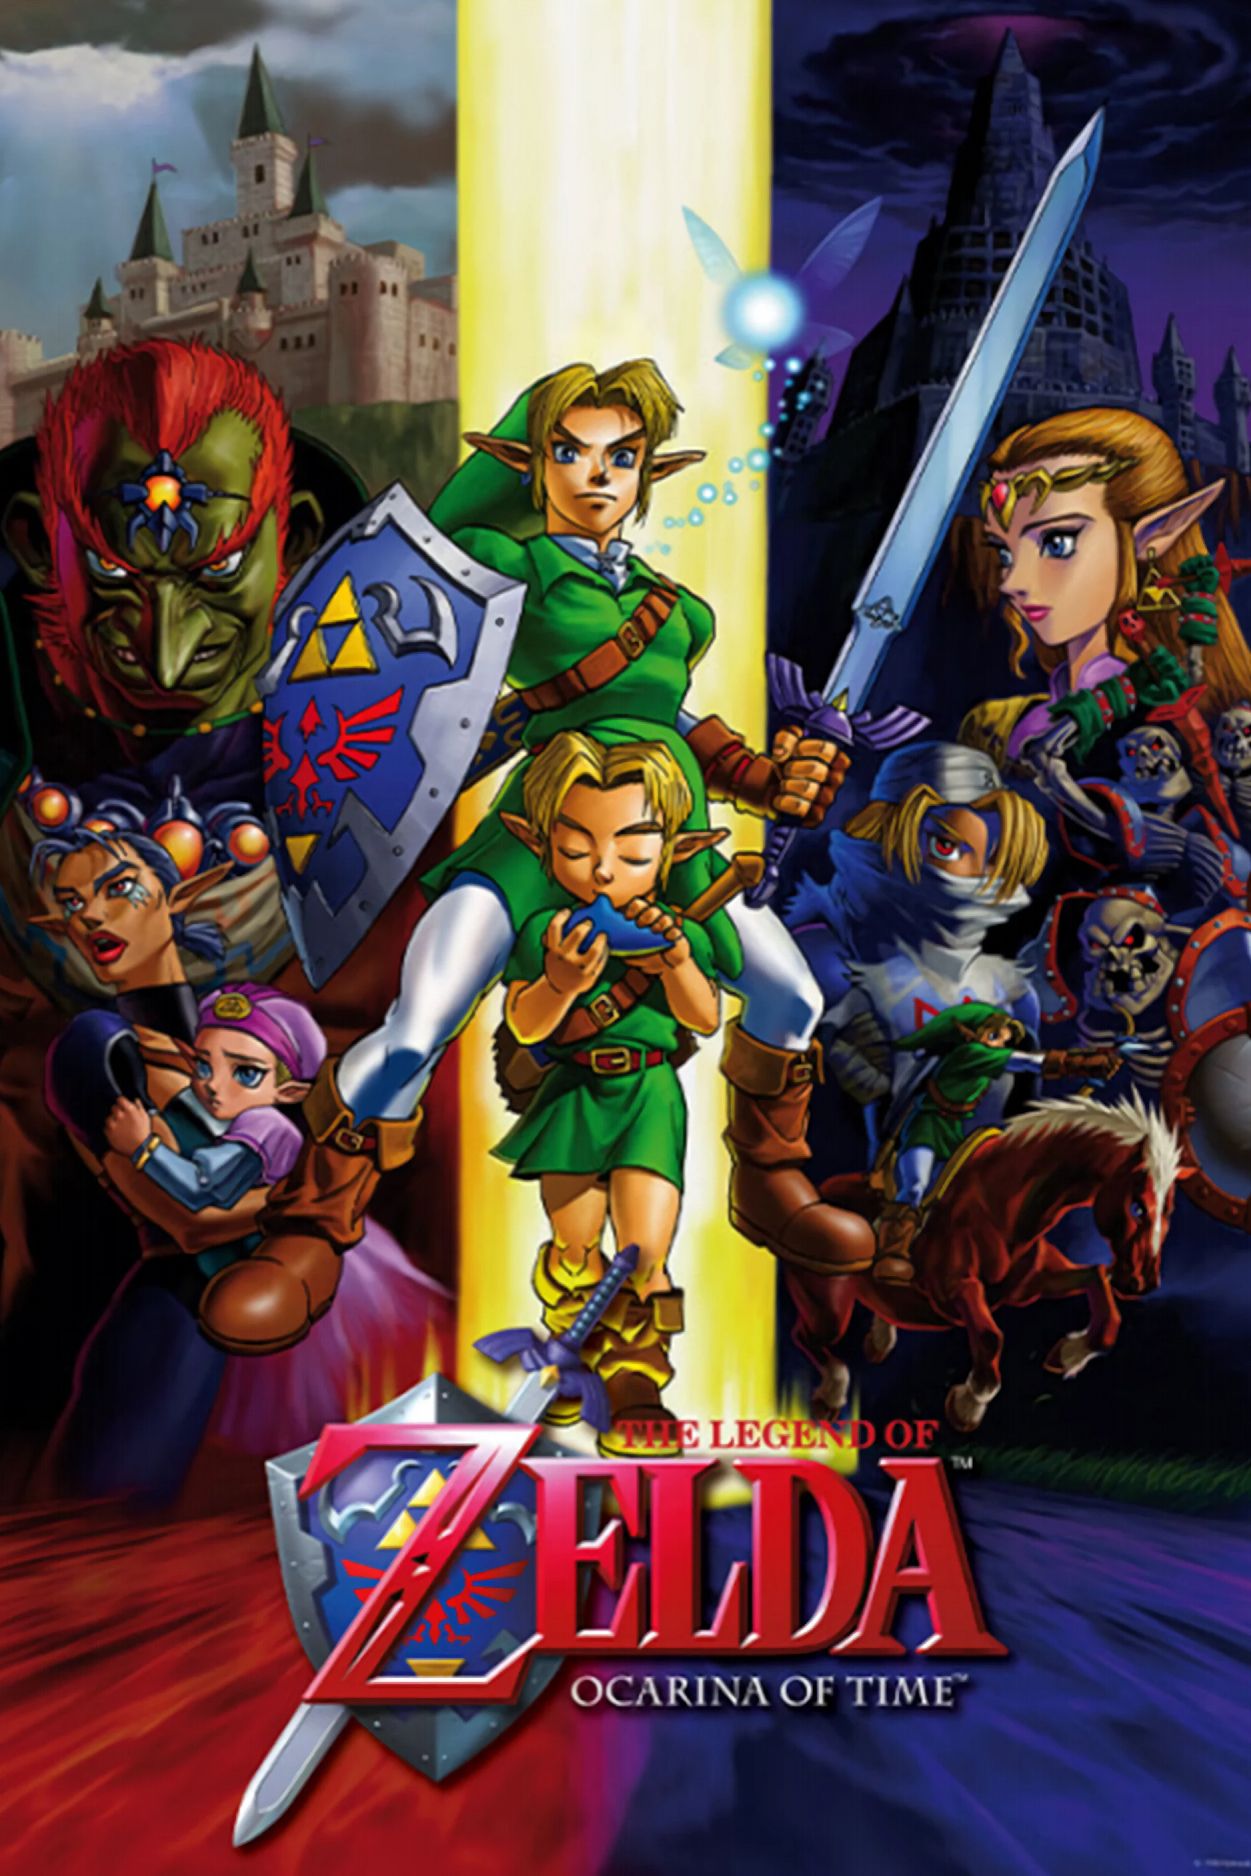 Pôster do jogo The Legend of Zelda Ocarina of Time